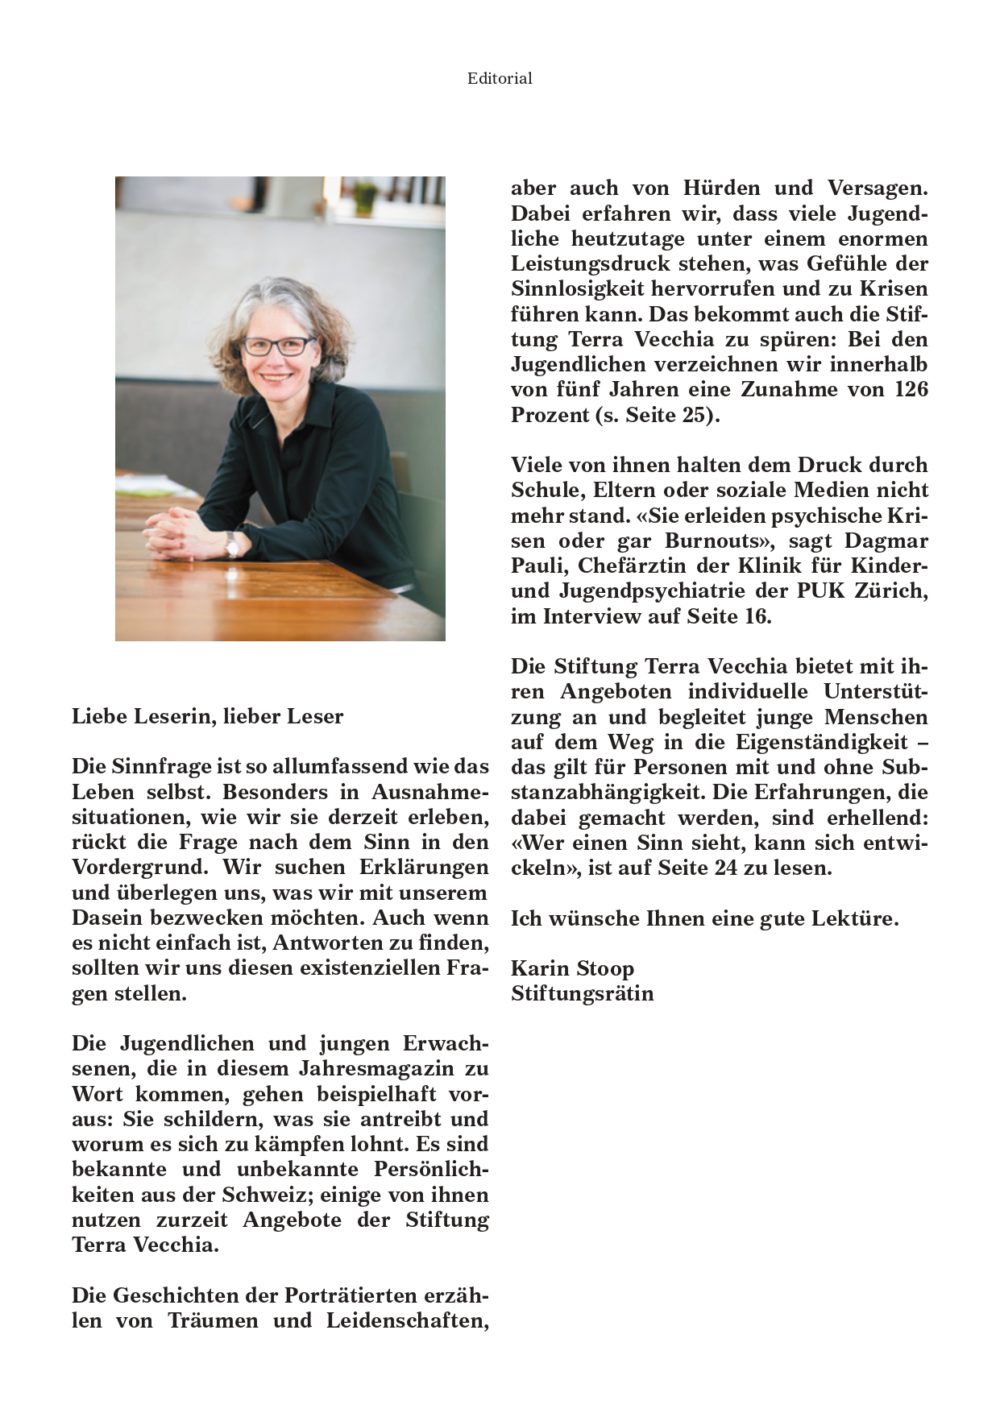 Terra Vecchia Jahresmagazin 2020 3 page 0001